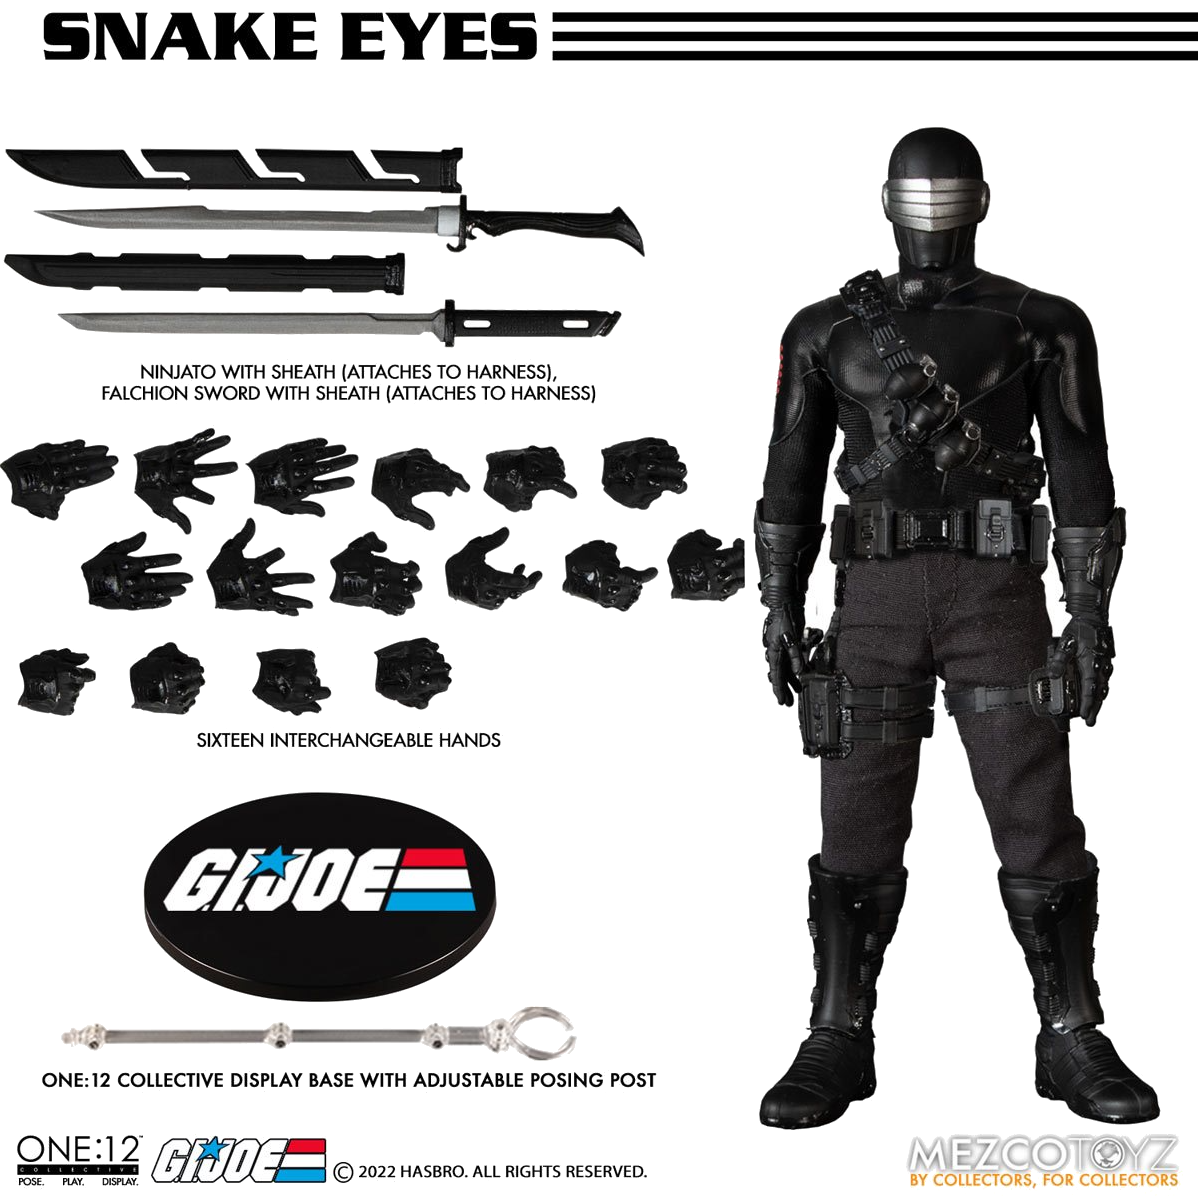 G.I. Joe One:12 - Snake Eyes Deluxe